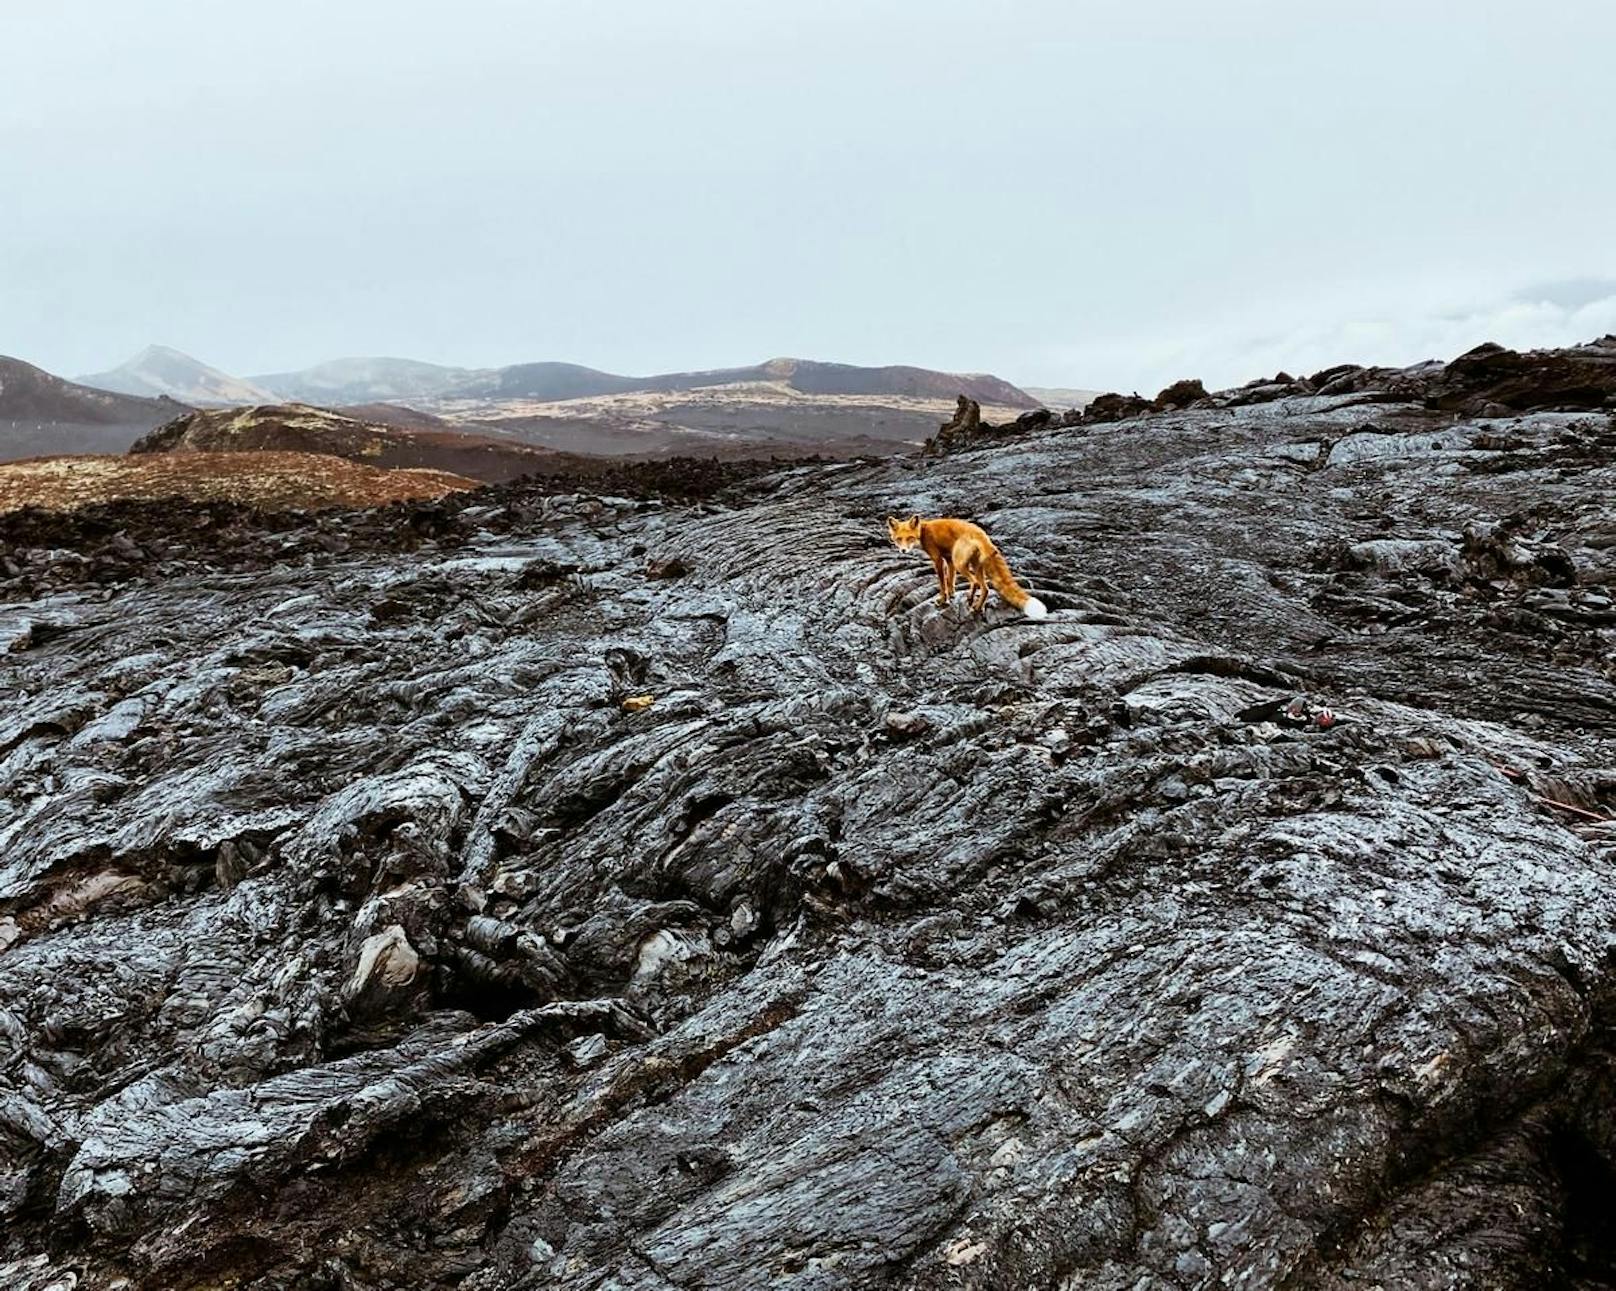 <strong>SWPA 3. Platz Kategorie Landschaft: Fyodor Savintsev, Russland.</strong><br>"Bei meiner ersten Reise zu den Vulkanen von Kamchatka im Osten Russlands", erzählt der Fotograf. "Die Kachatka-Halbinsel ist anders als alles andere, was ich je gesehen habe. Ich war absorbiert von ihrer Schönheit."